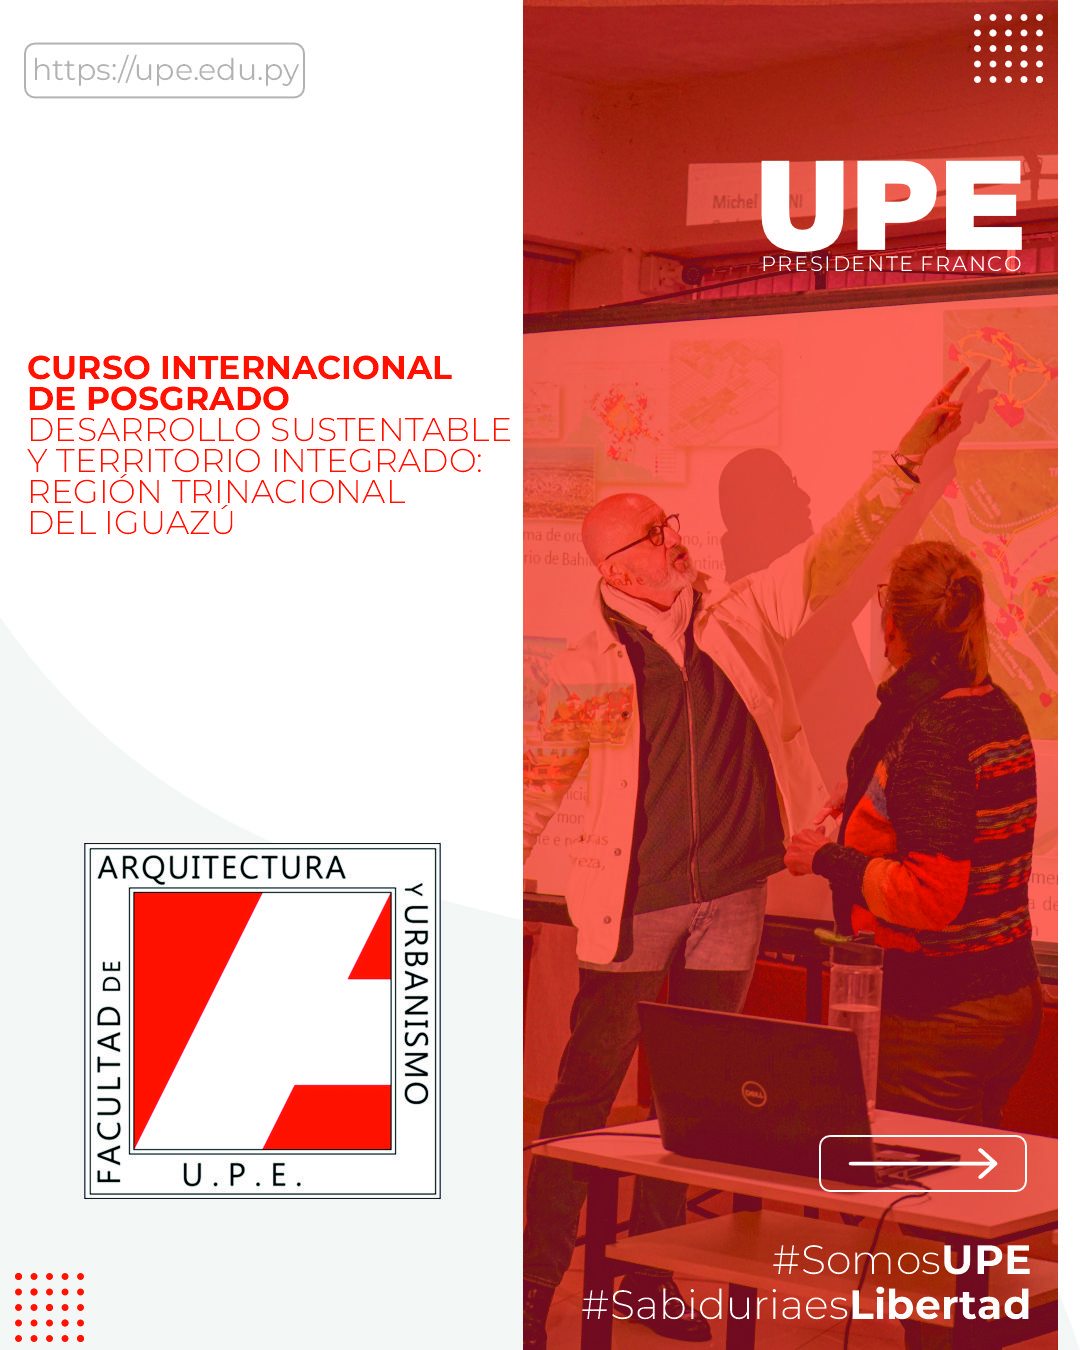 Curso Internacional de Posgrado: Desarrollo Sustentable y Territorio Integrado de la Región Trinacional del Iguazú